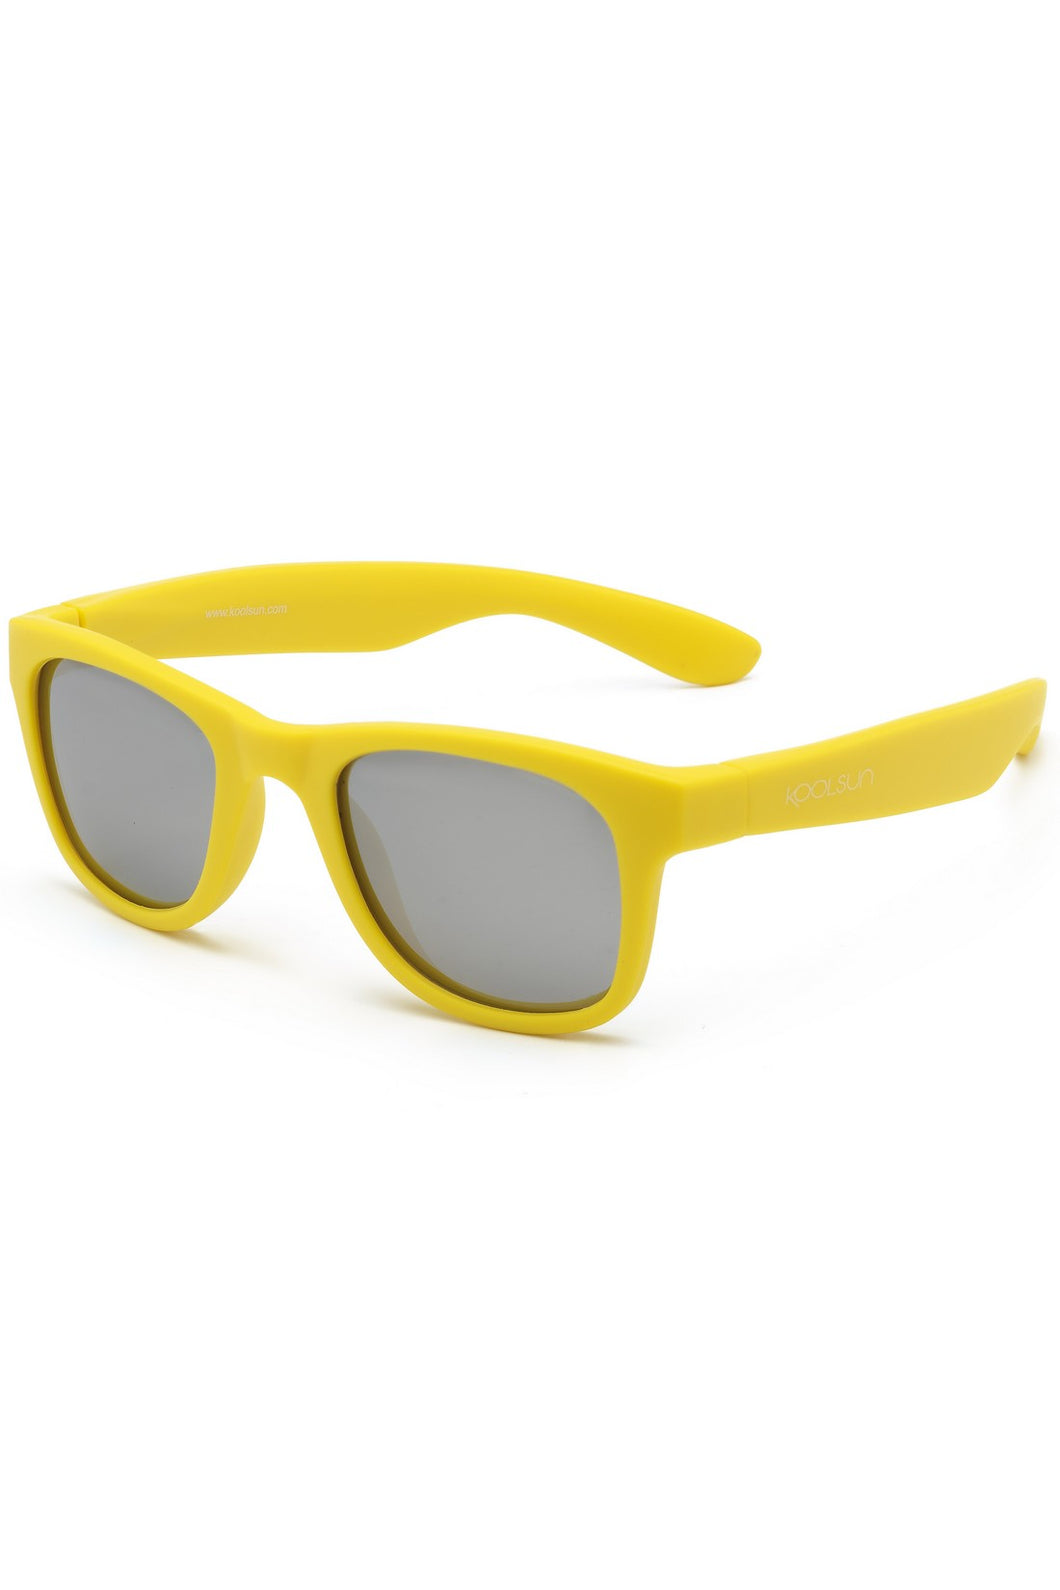 Koolsun Wave Baby & Kids Sunglasses - Empire Yellow